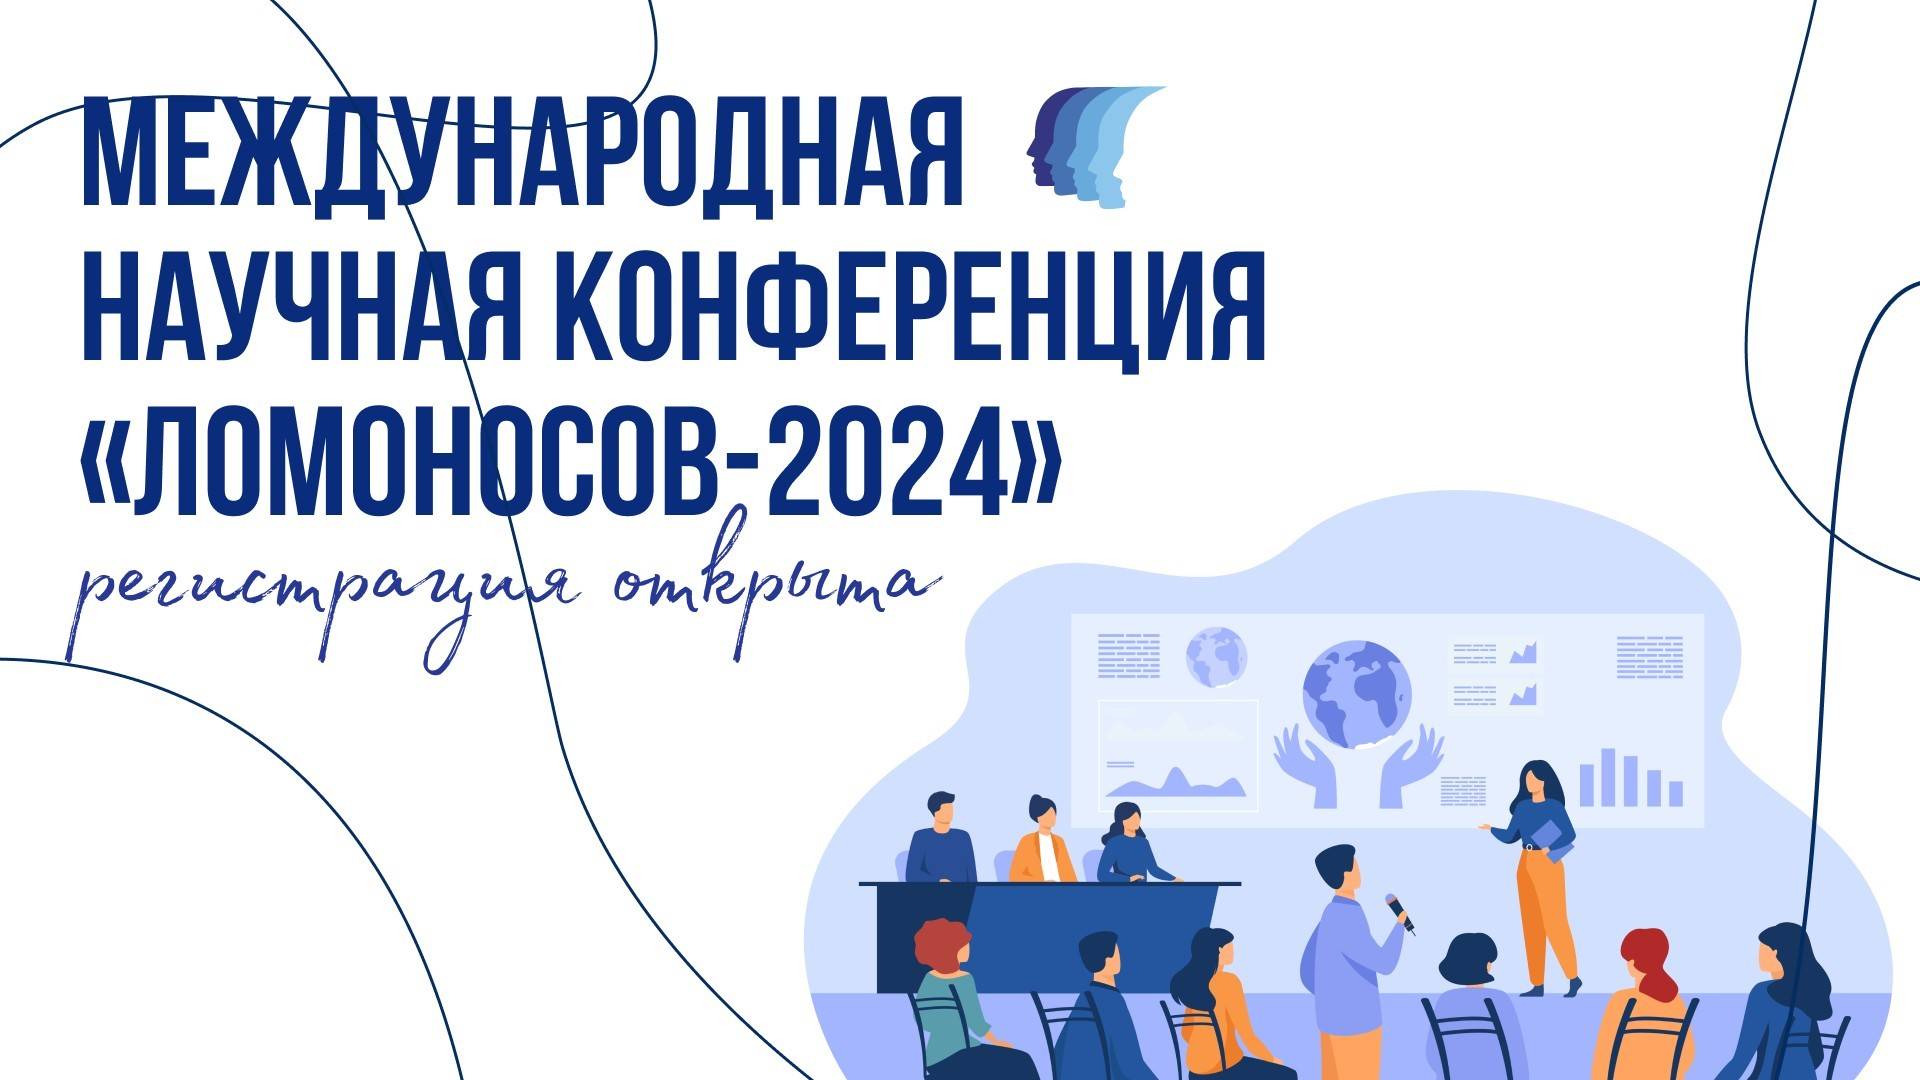 XIX Международная научная конференция студентов, магистрантов и молодых ученых «Ломоносов – 2024»,